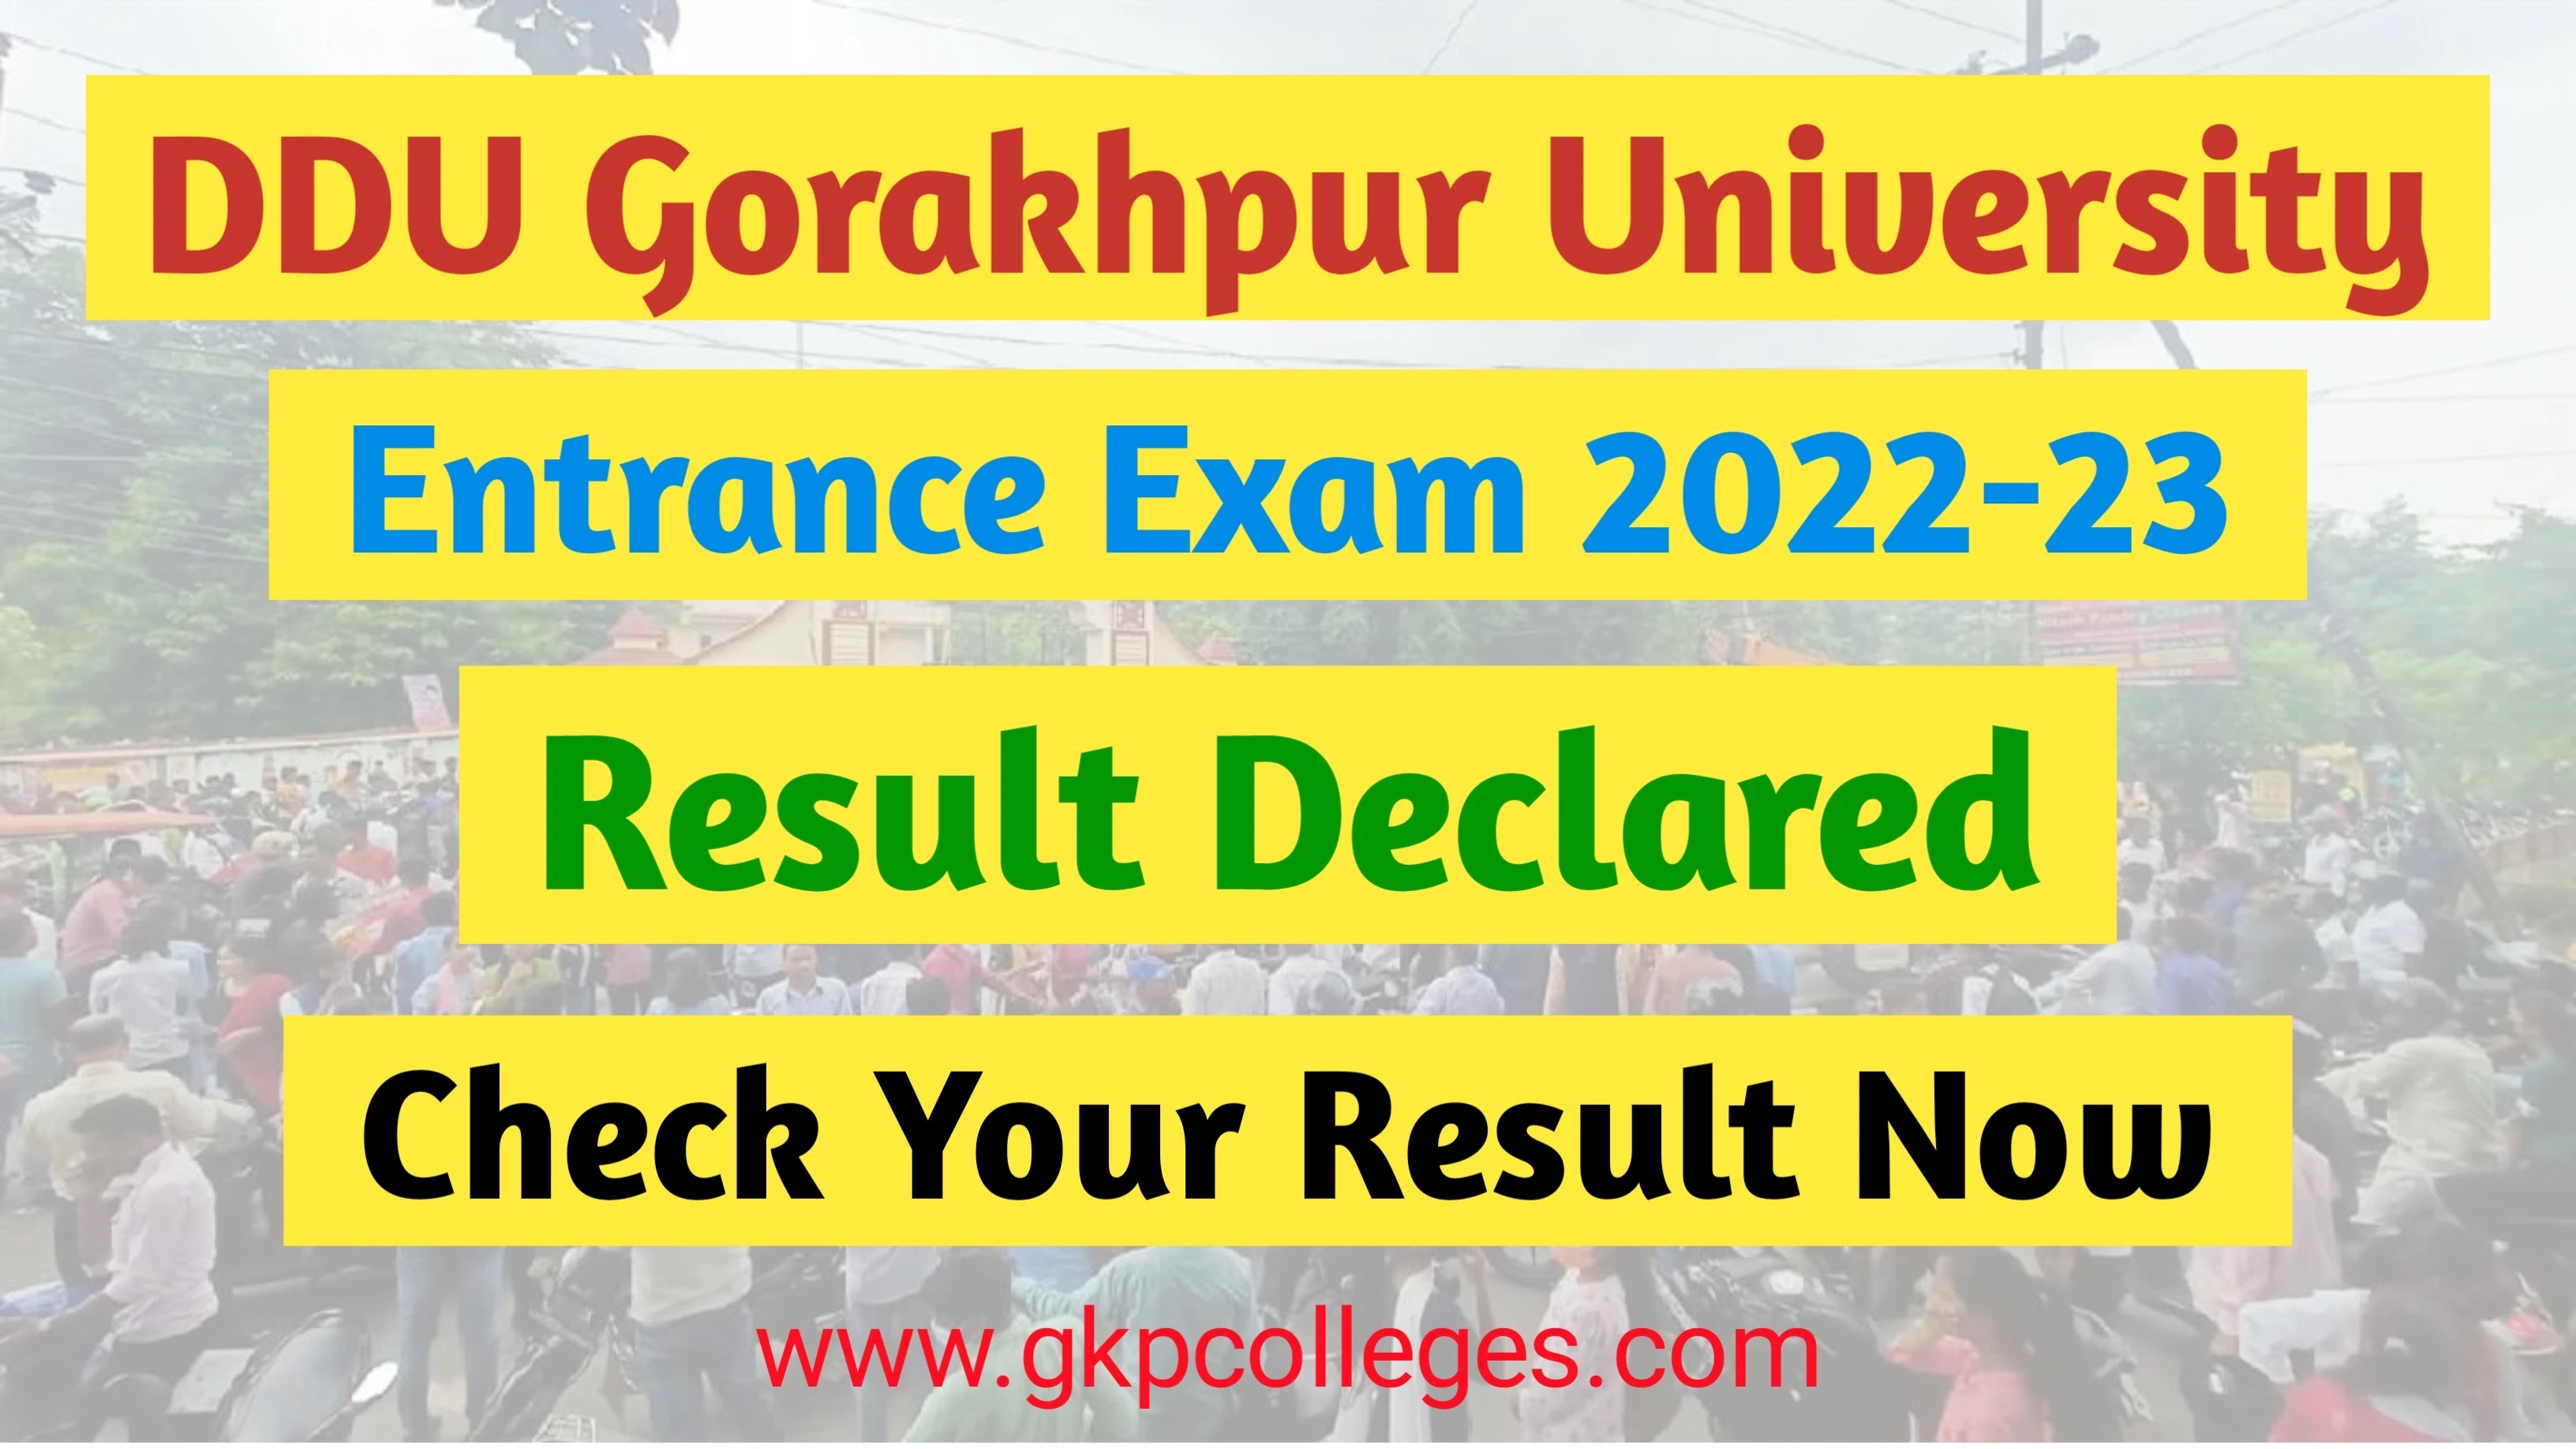 DDU Entrance Exam 2022-23 Result Declared for UG & PG, अभी Check करें